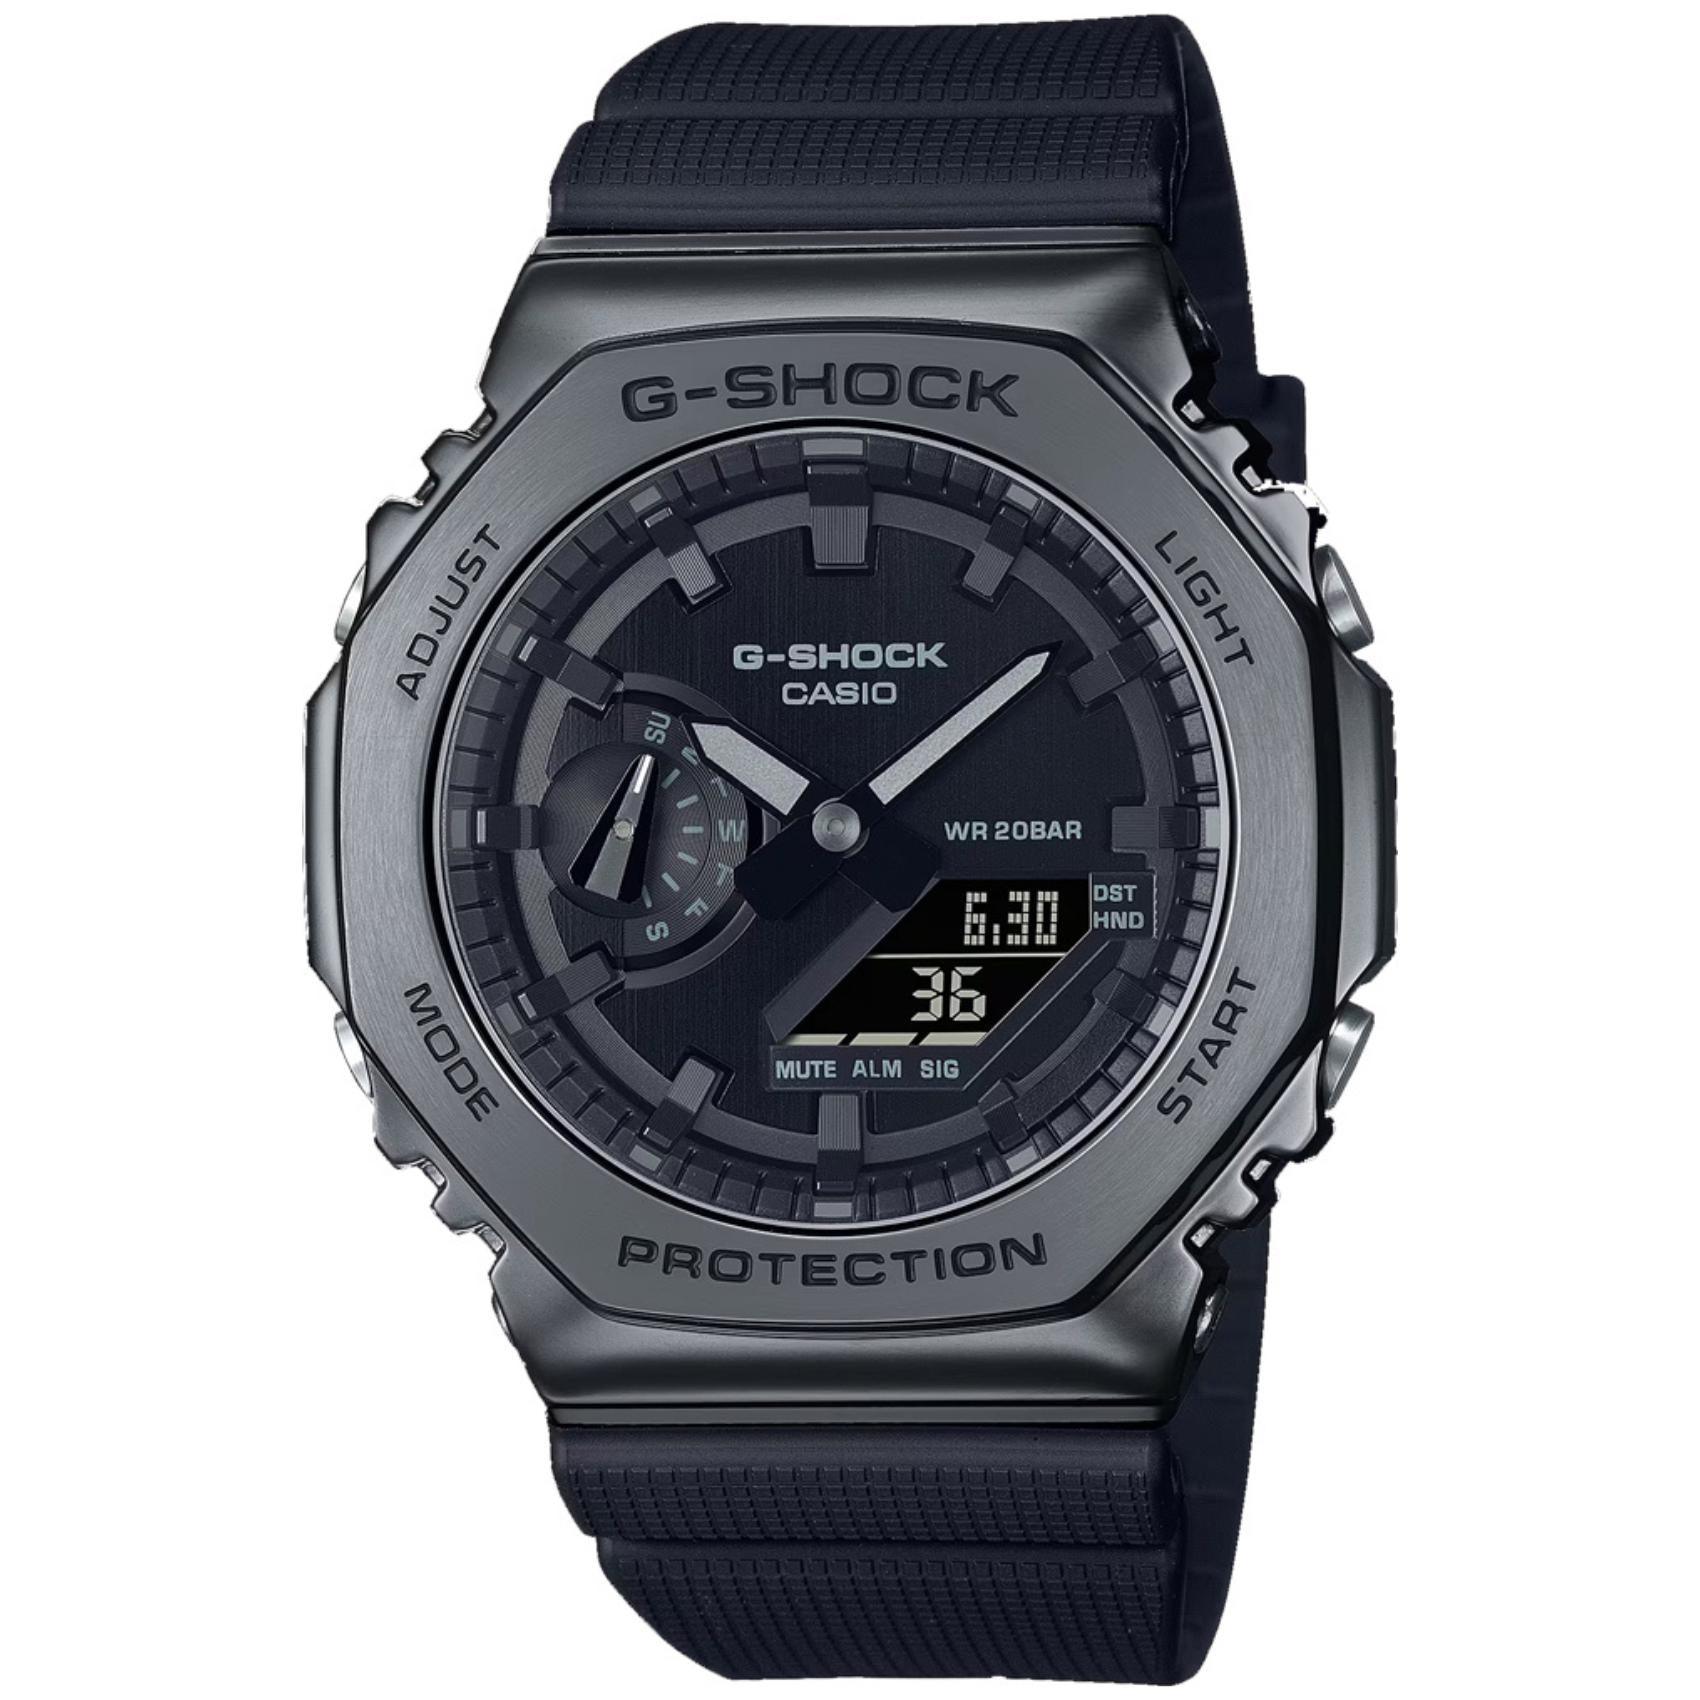 Ρολόι χρονογράφος Casio G-Shock GM-2100BB-1AER με μαύρο καουτσούκ λουράκι, μαύρο καντράν μεγέθους 44.4mm anadigi κατάλληλο για καταδύσεις.